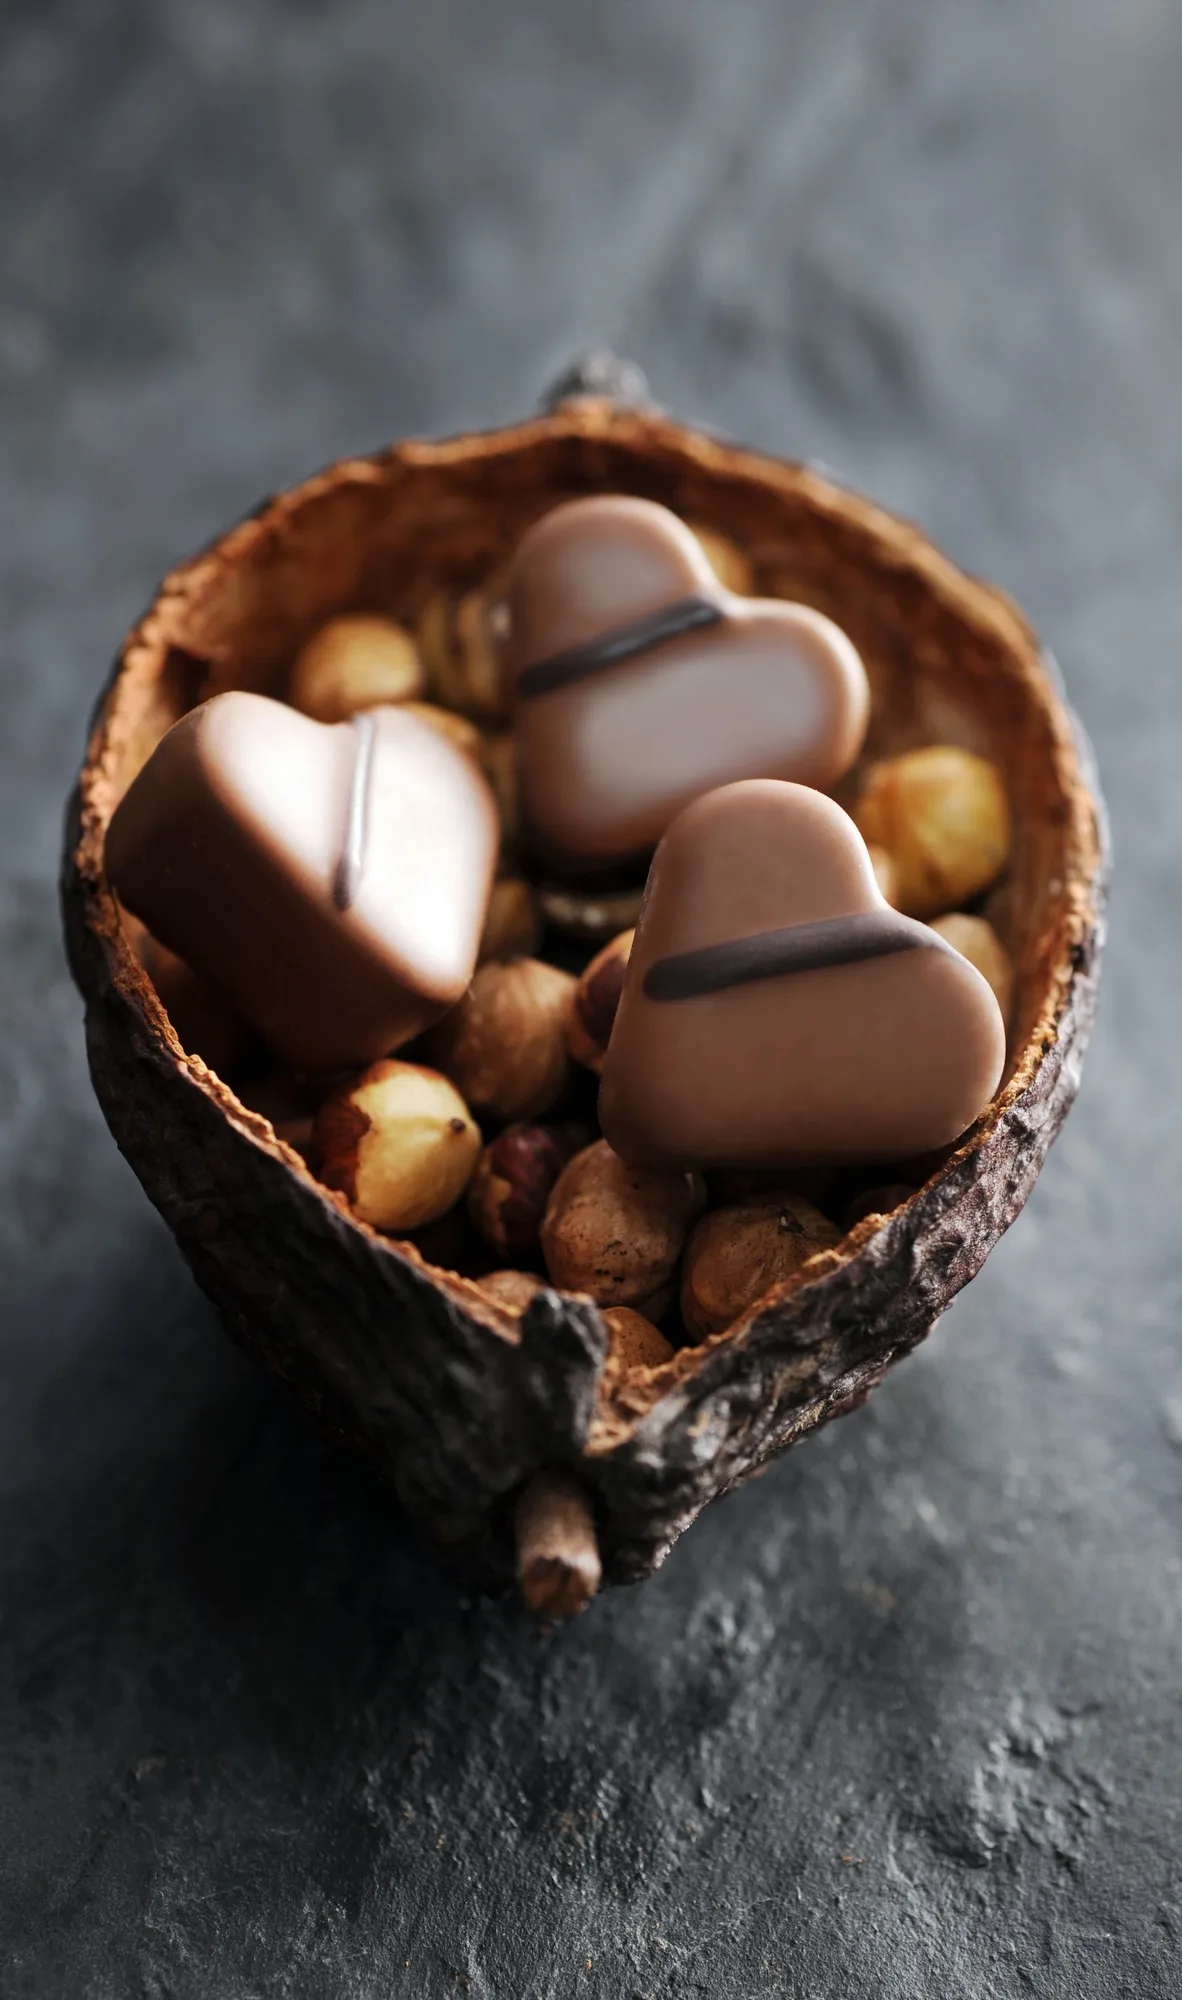 savoir faire chocolat visite carcassonne